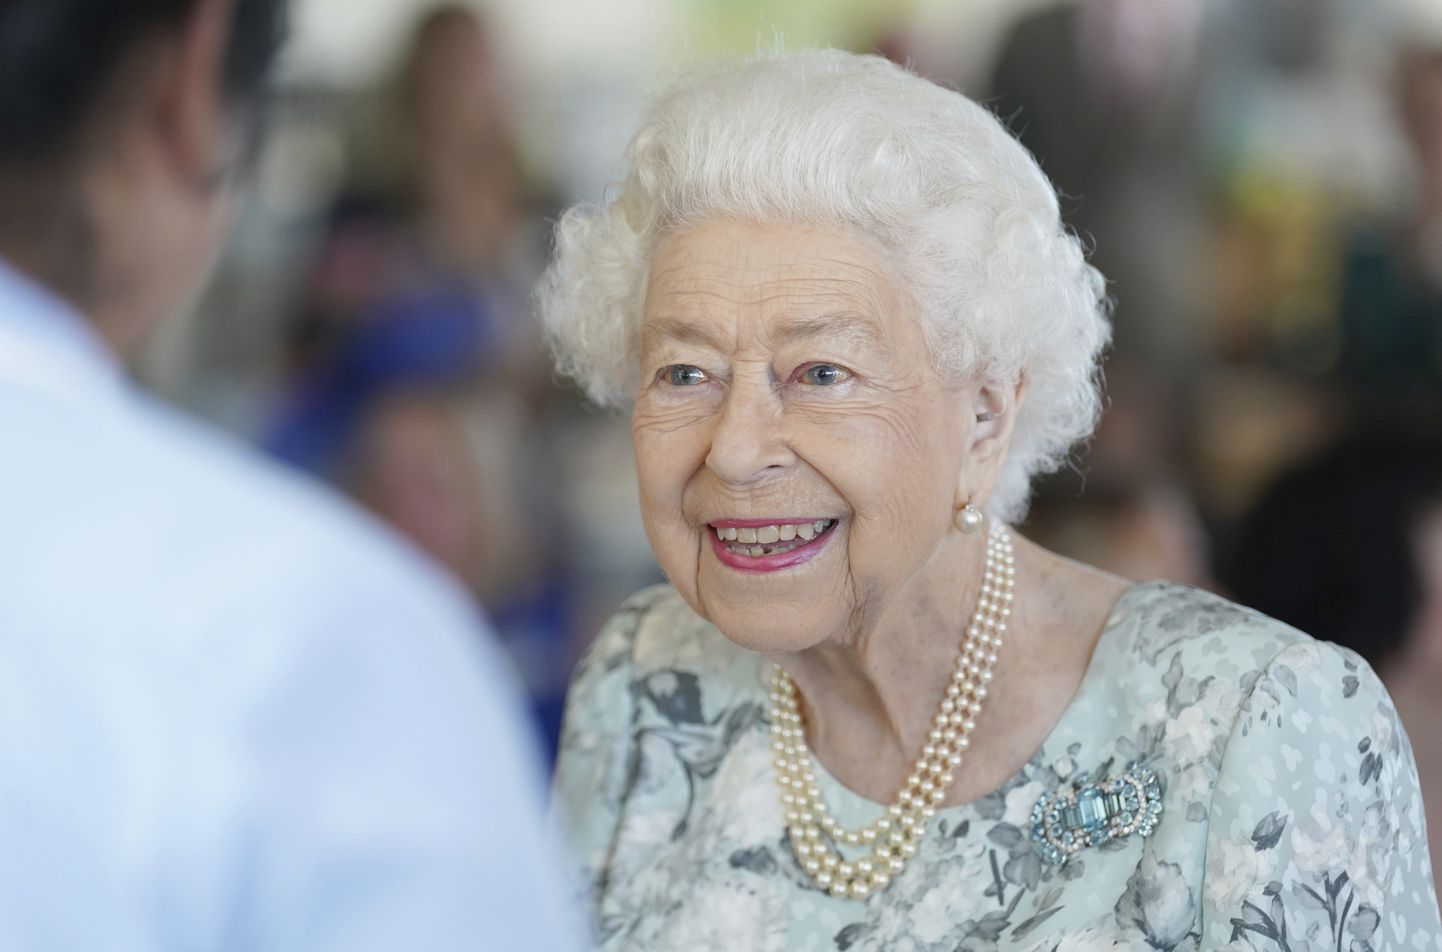 Kuninganna on hetkel 96-aastane.